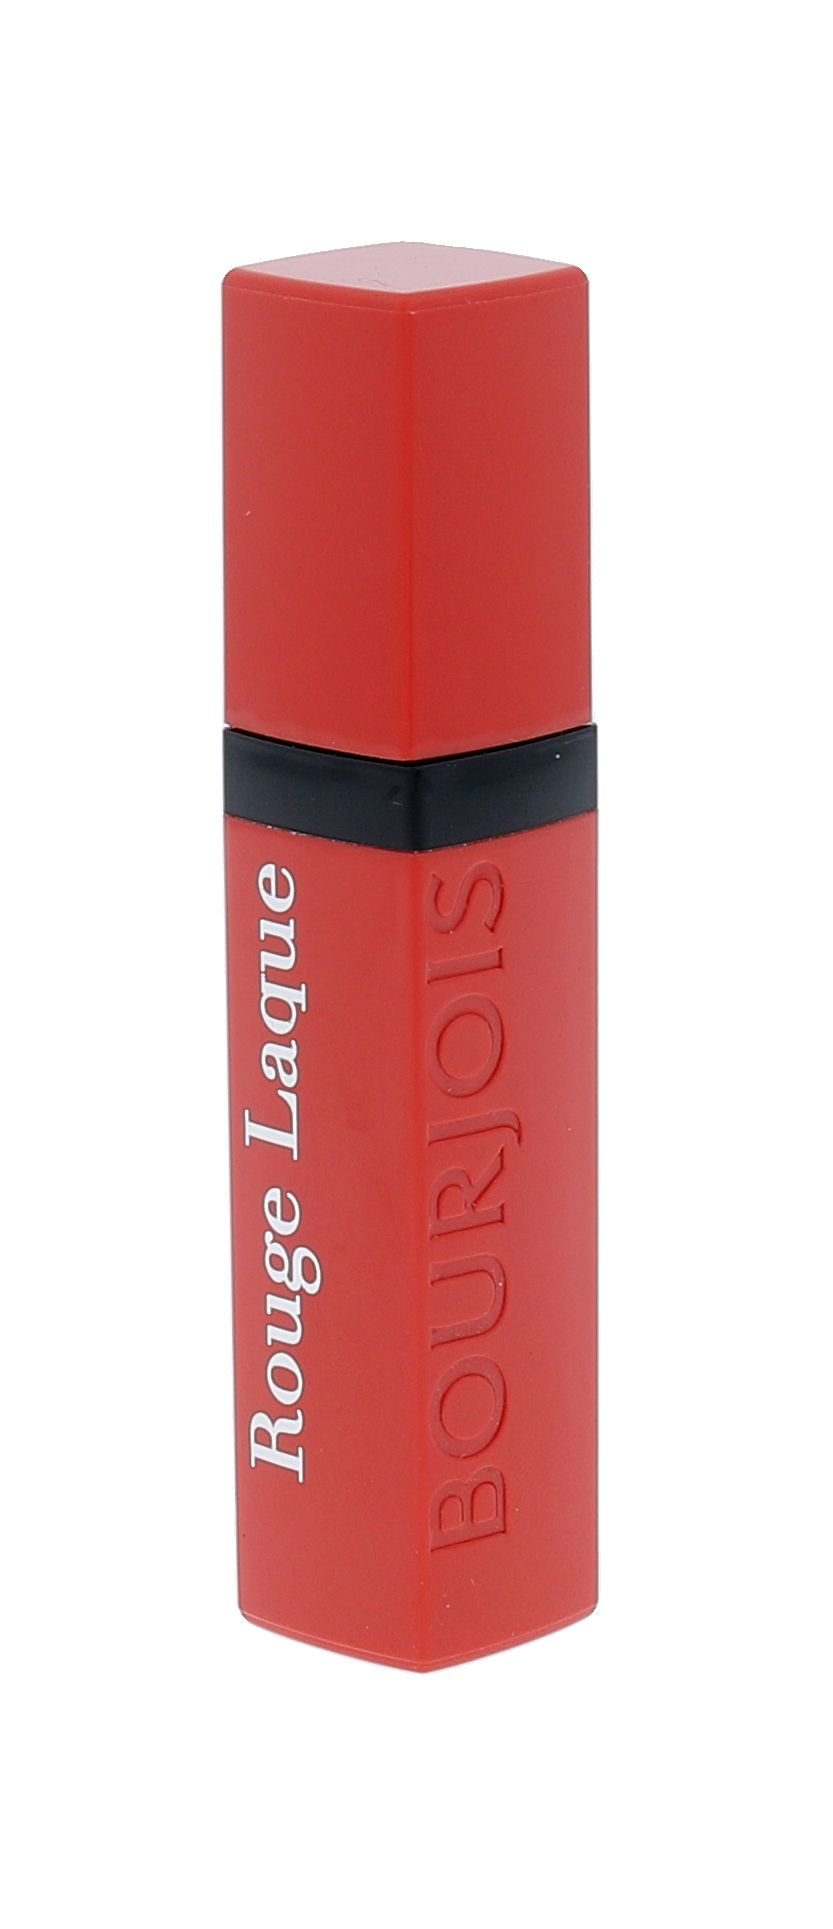 BOURJOIS Paris Rouge Laque Liquid Lipstick